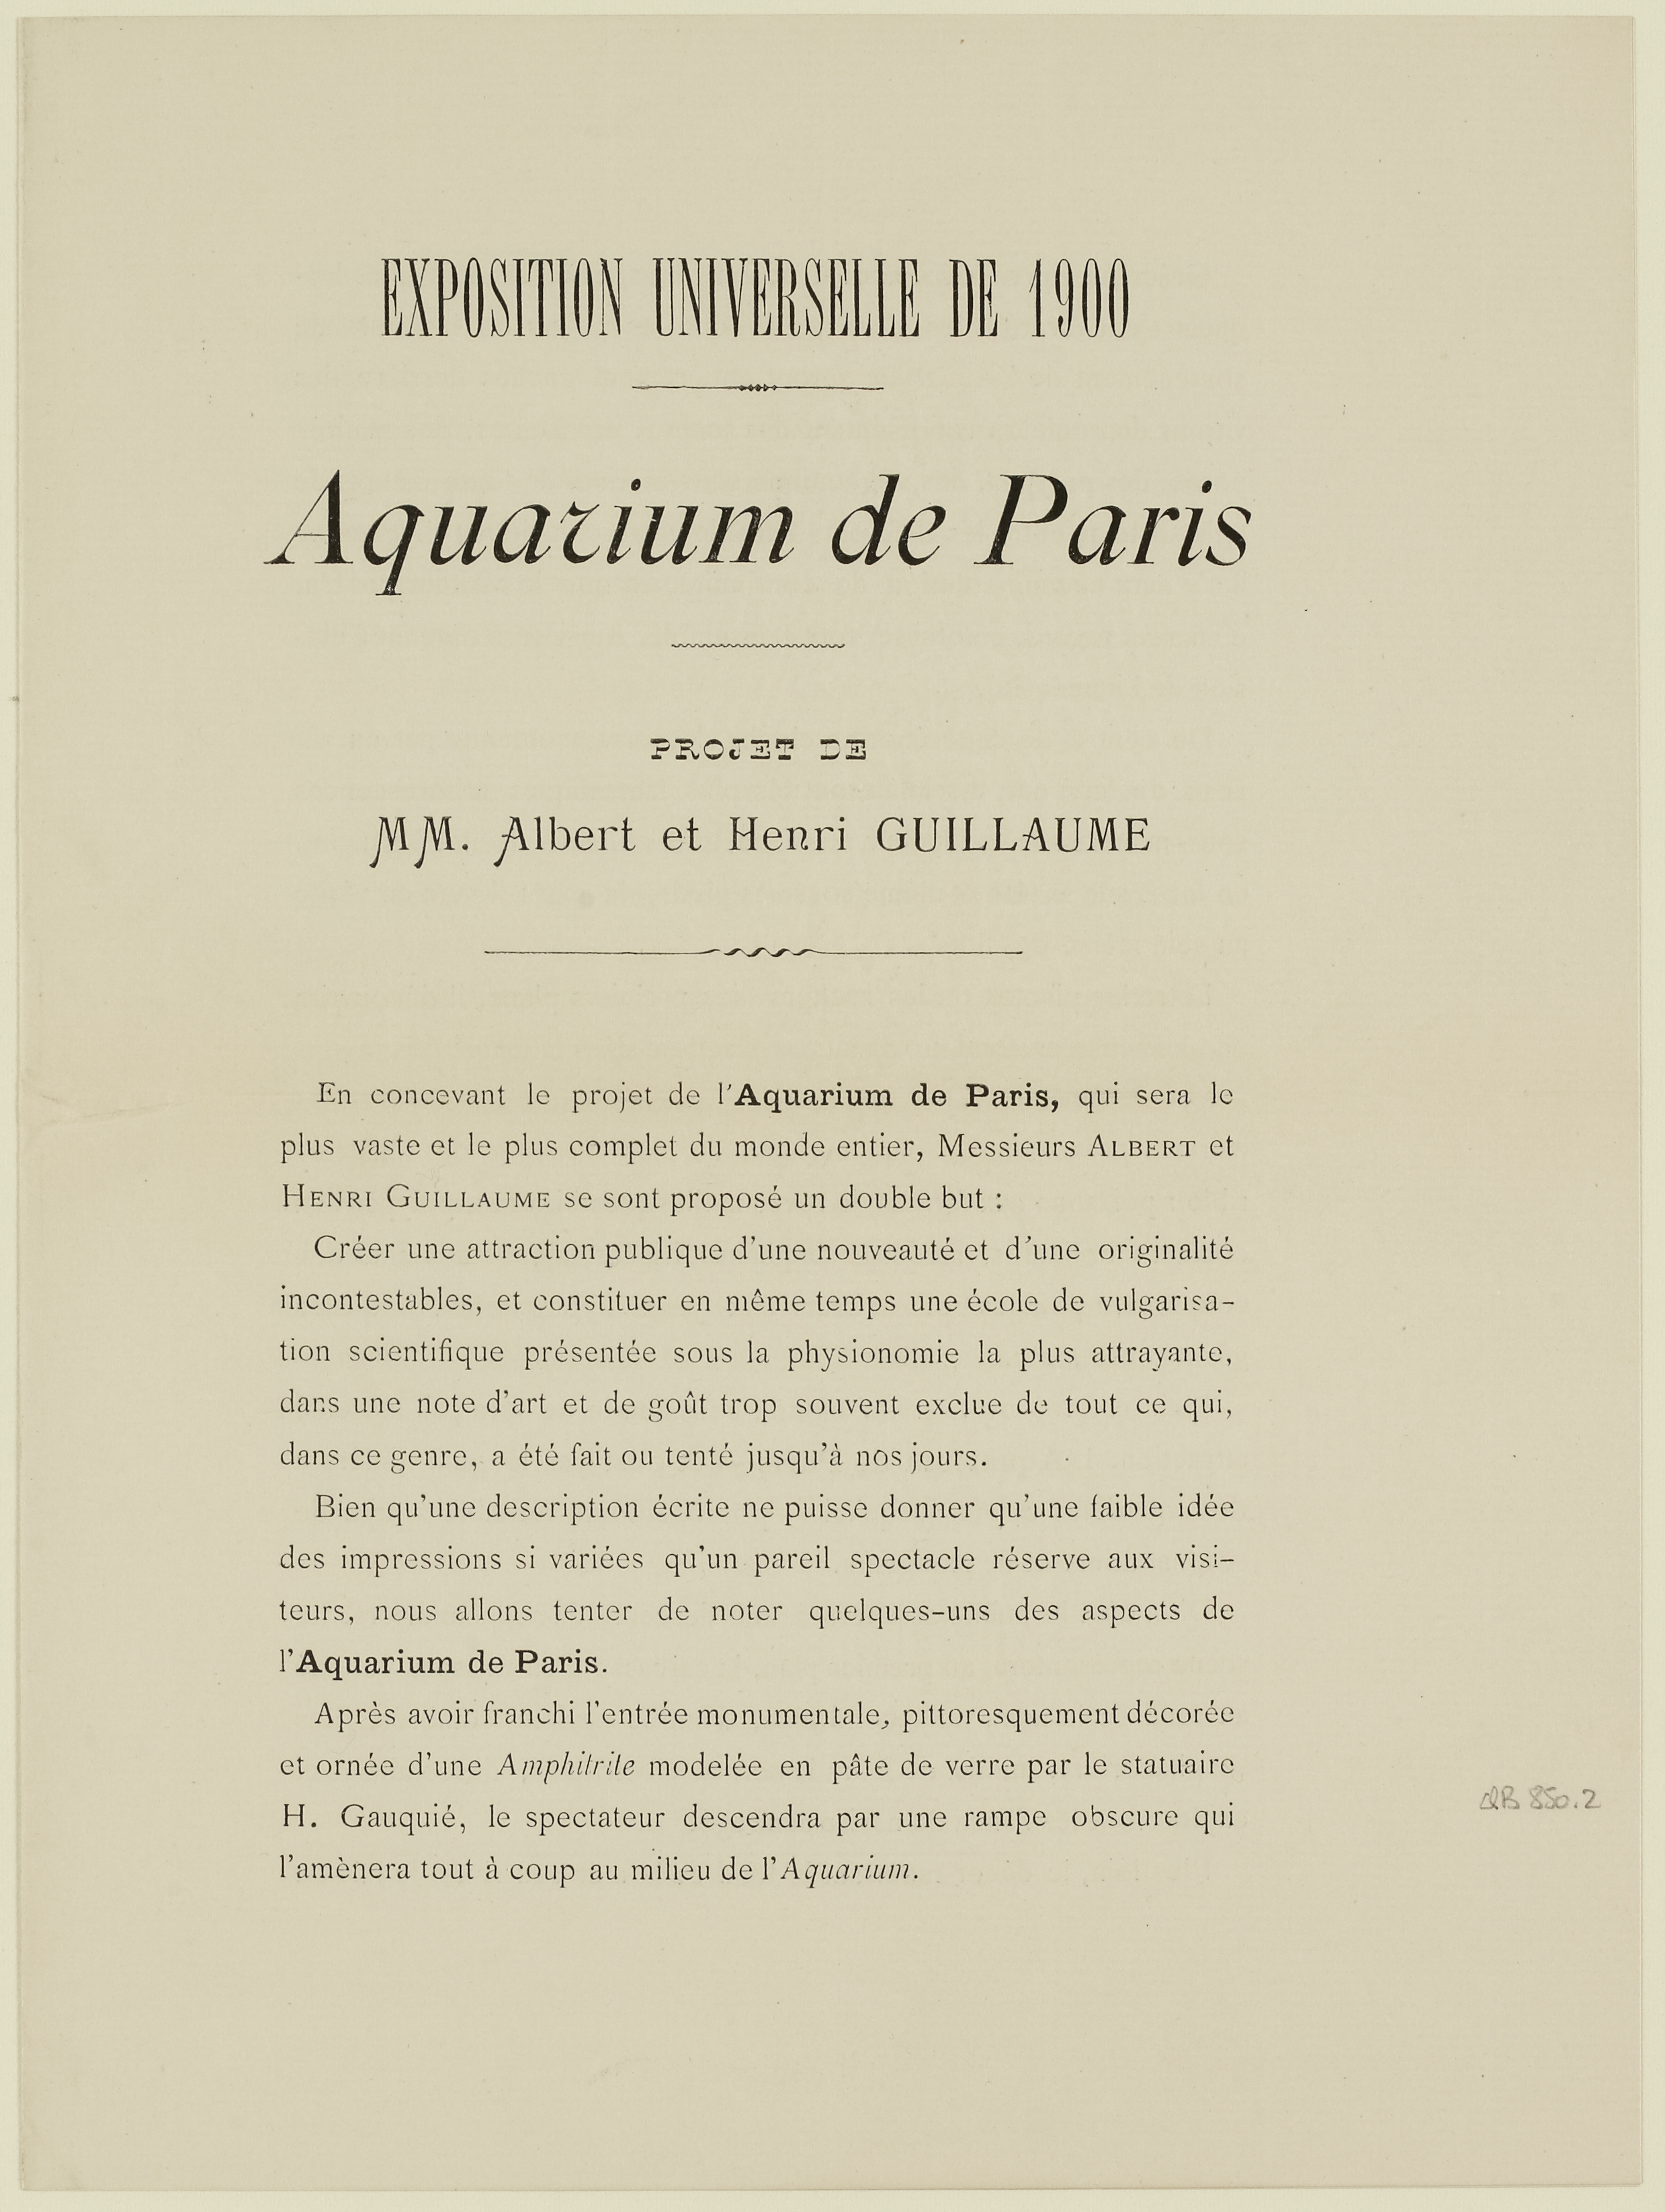 “Aquarium de Paris / projet de / MM. Albert et Henri Guillaume”.